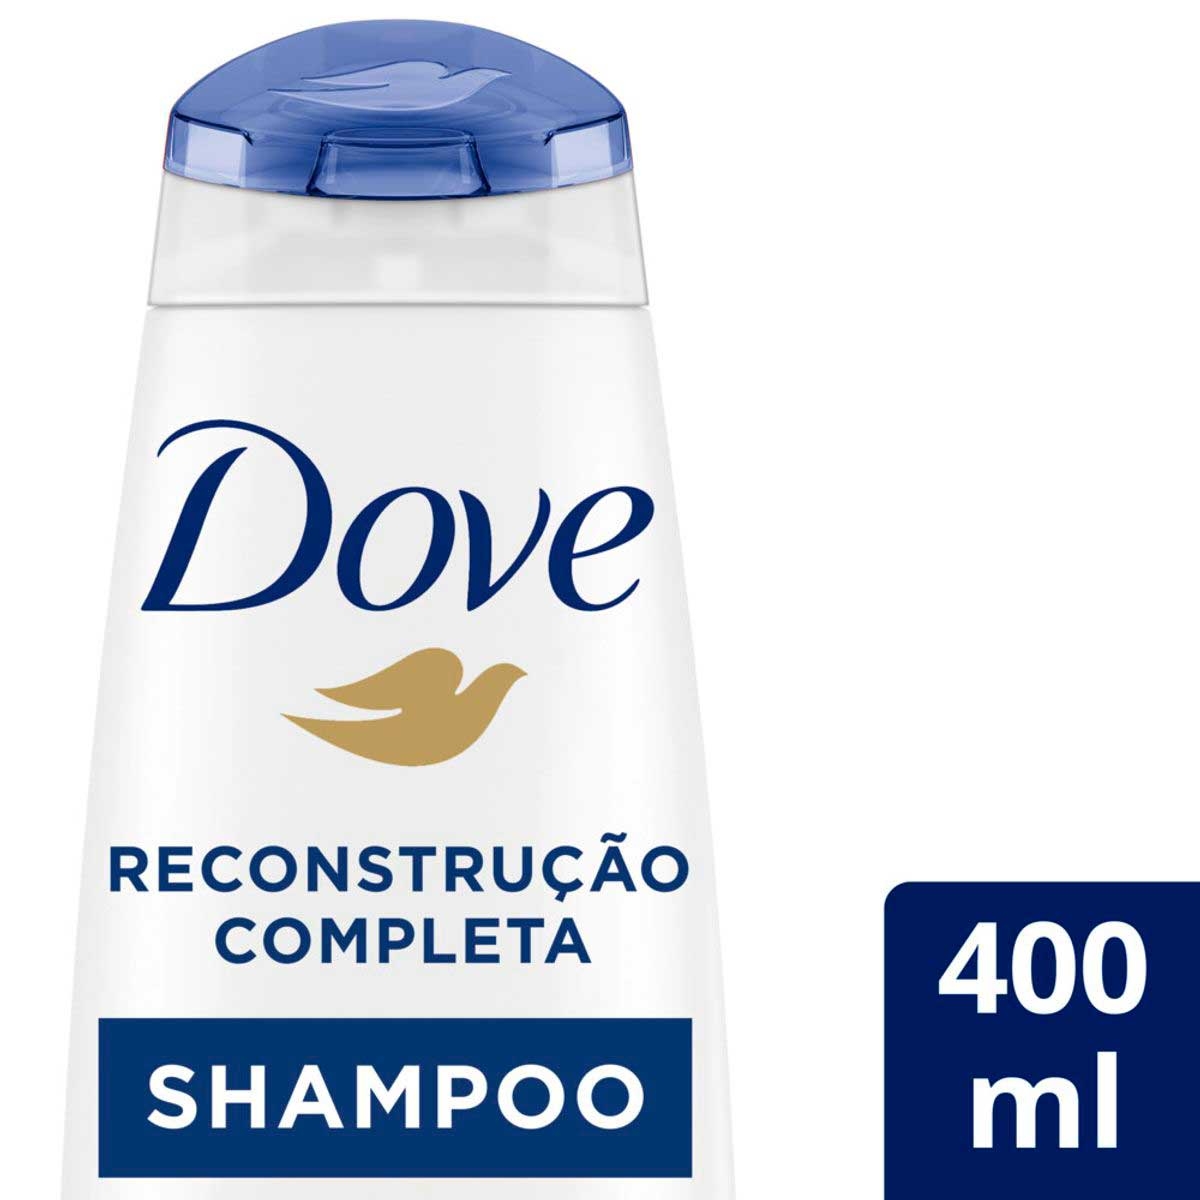 Shampoo Dove Reconstrução Completa Para Cabelos Danificados com 400ml 400mL